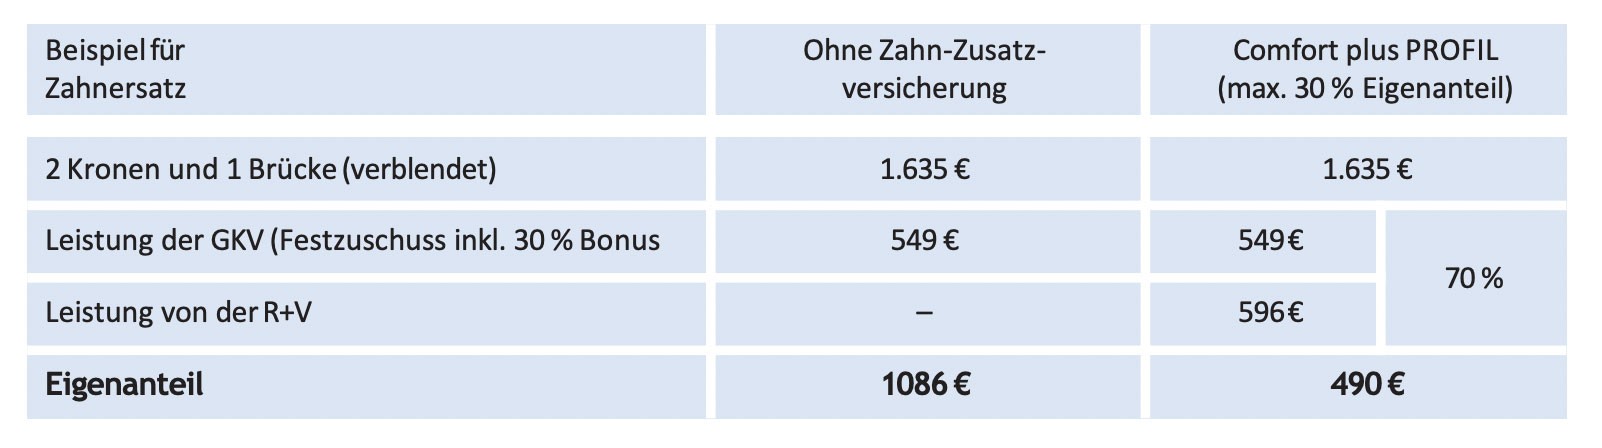 tabelle-zahnersatz